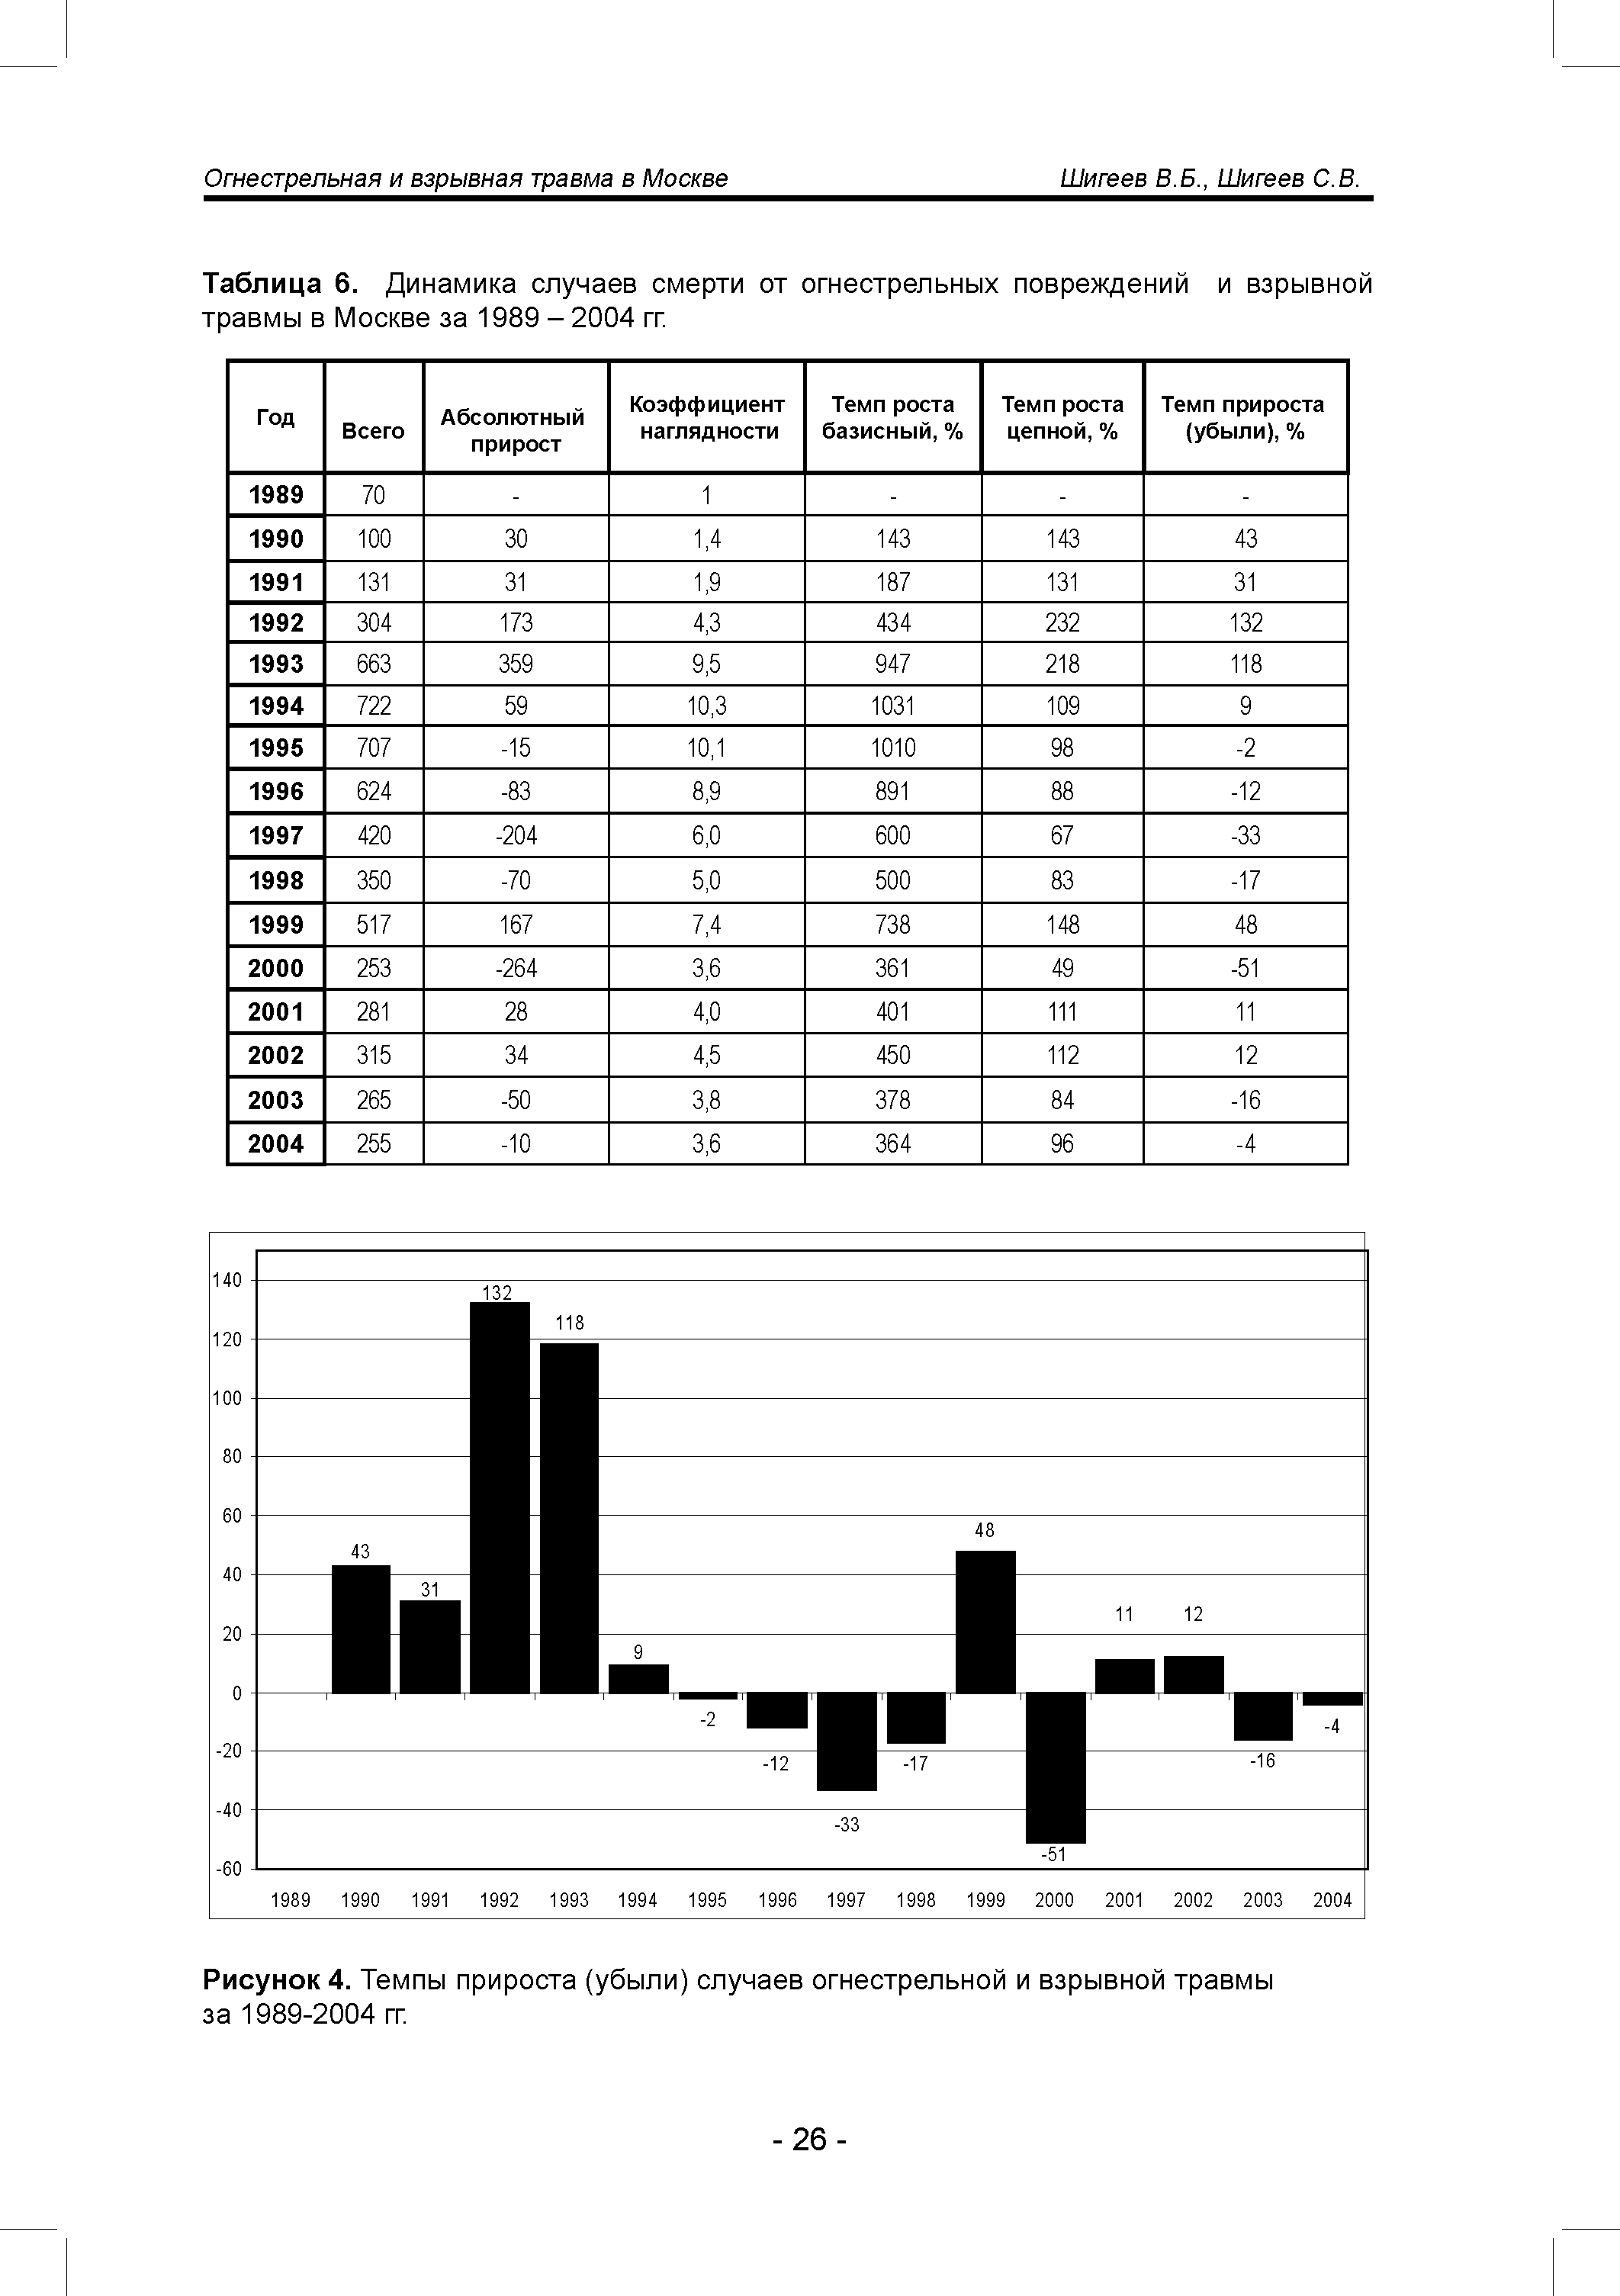 Рисунок 4. Темпы прироста (убыли) случаев огнестрельной и взрывной травмы за 1989-2004 гг.